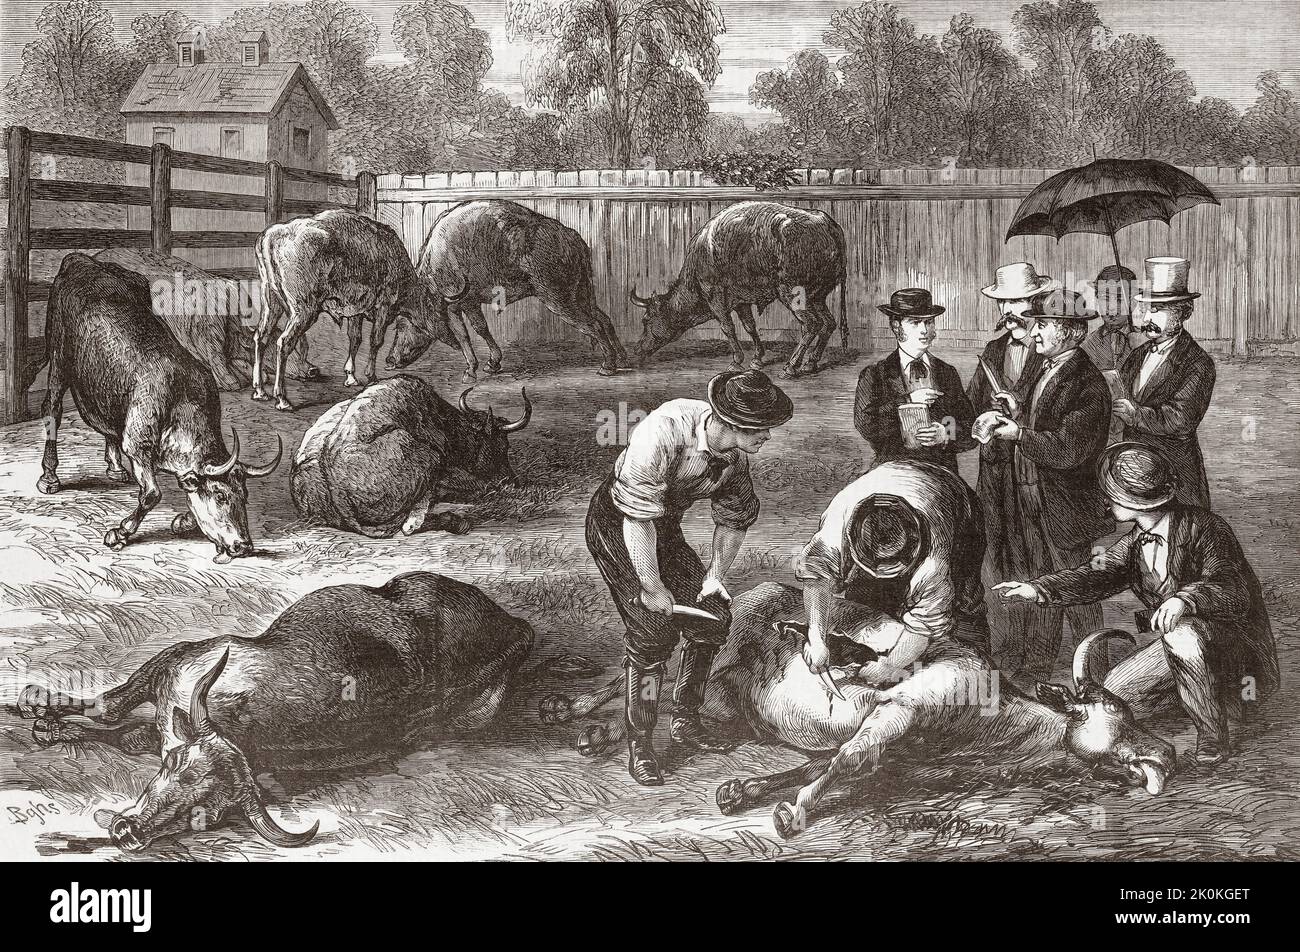 Los miembros de la Junta de Salud de Nueva York examinan los animales afectados por la peste bovina (también conocida como Steppe Murrain o Peste bovina) en 1868. Después de una ilustración en el periódico ilustrado de Frank Leslie. Foto de stock